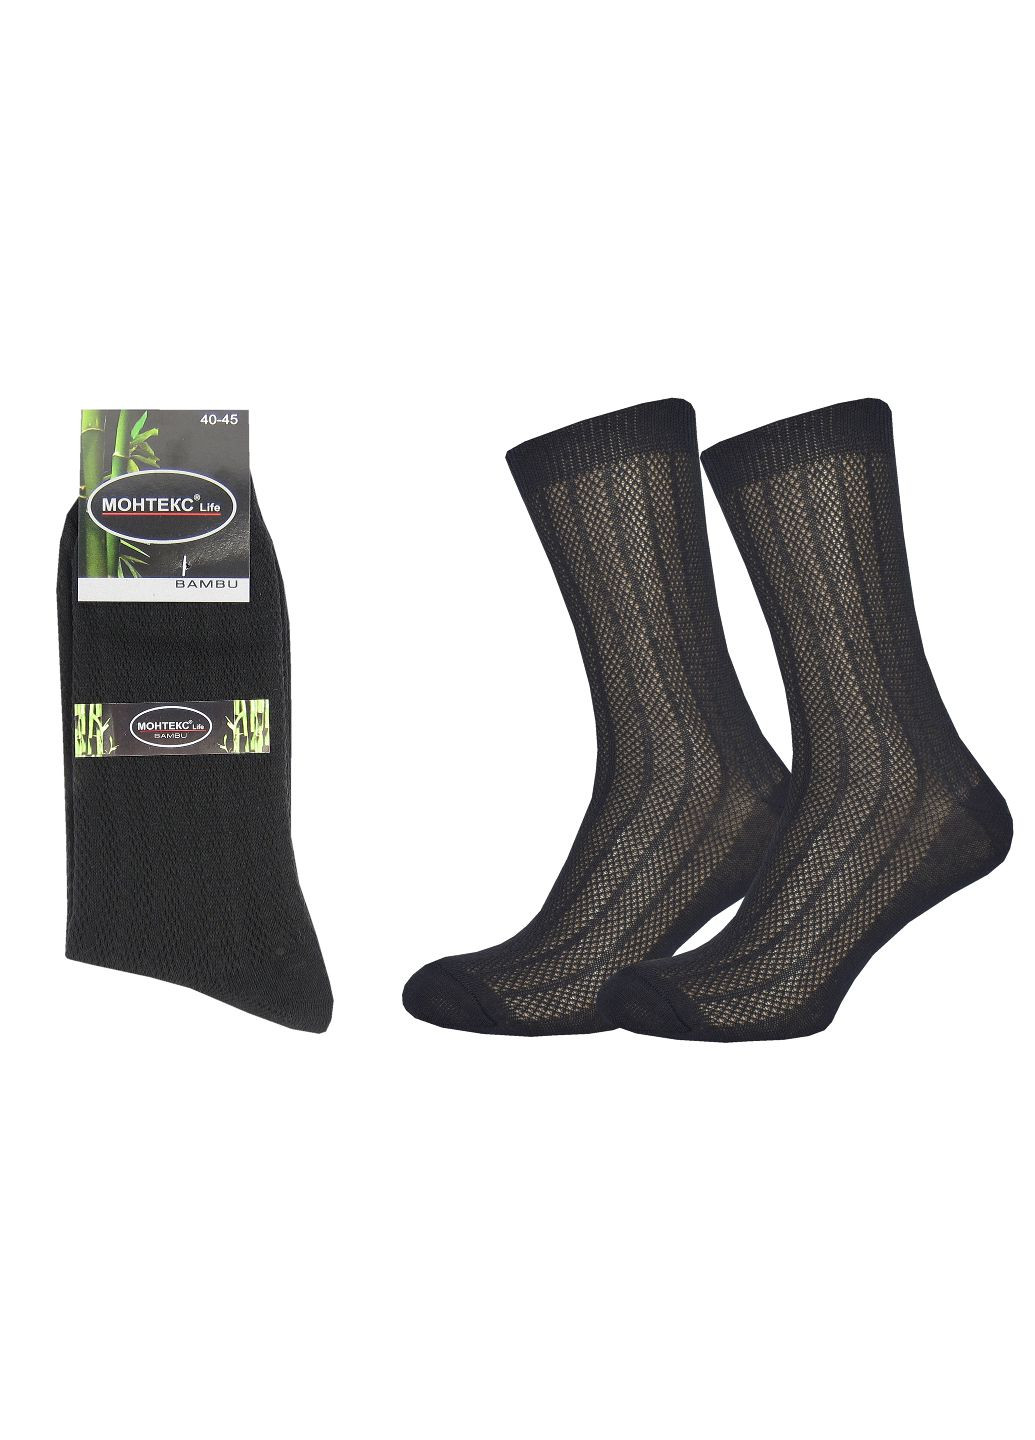 Летние мужские носки с сеткой (12 пар) Монтекс однотонные чёрные повседневные